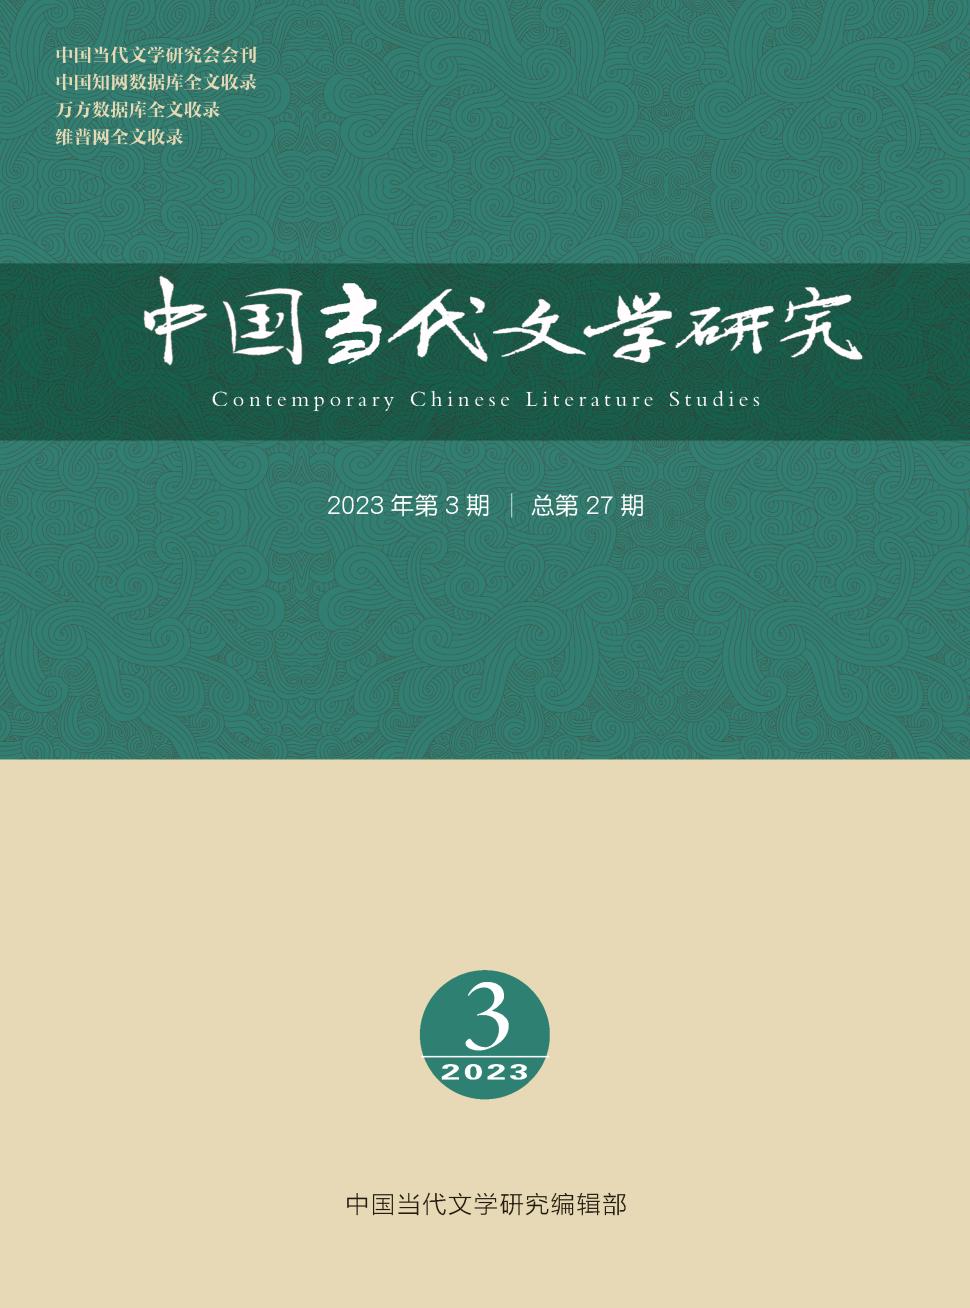 中国当代文学研究期刊